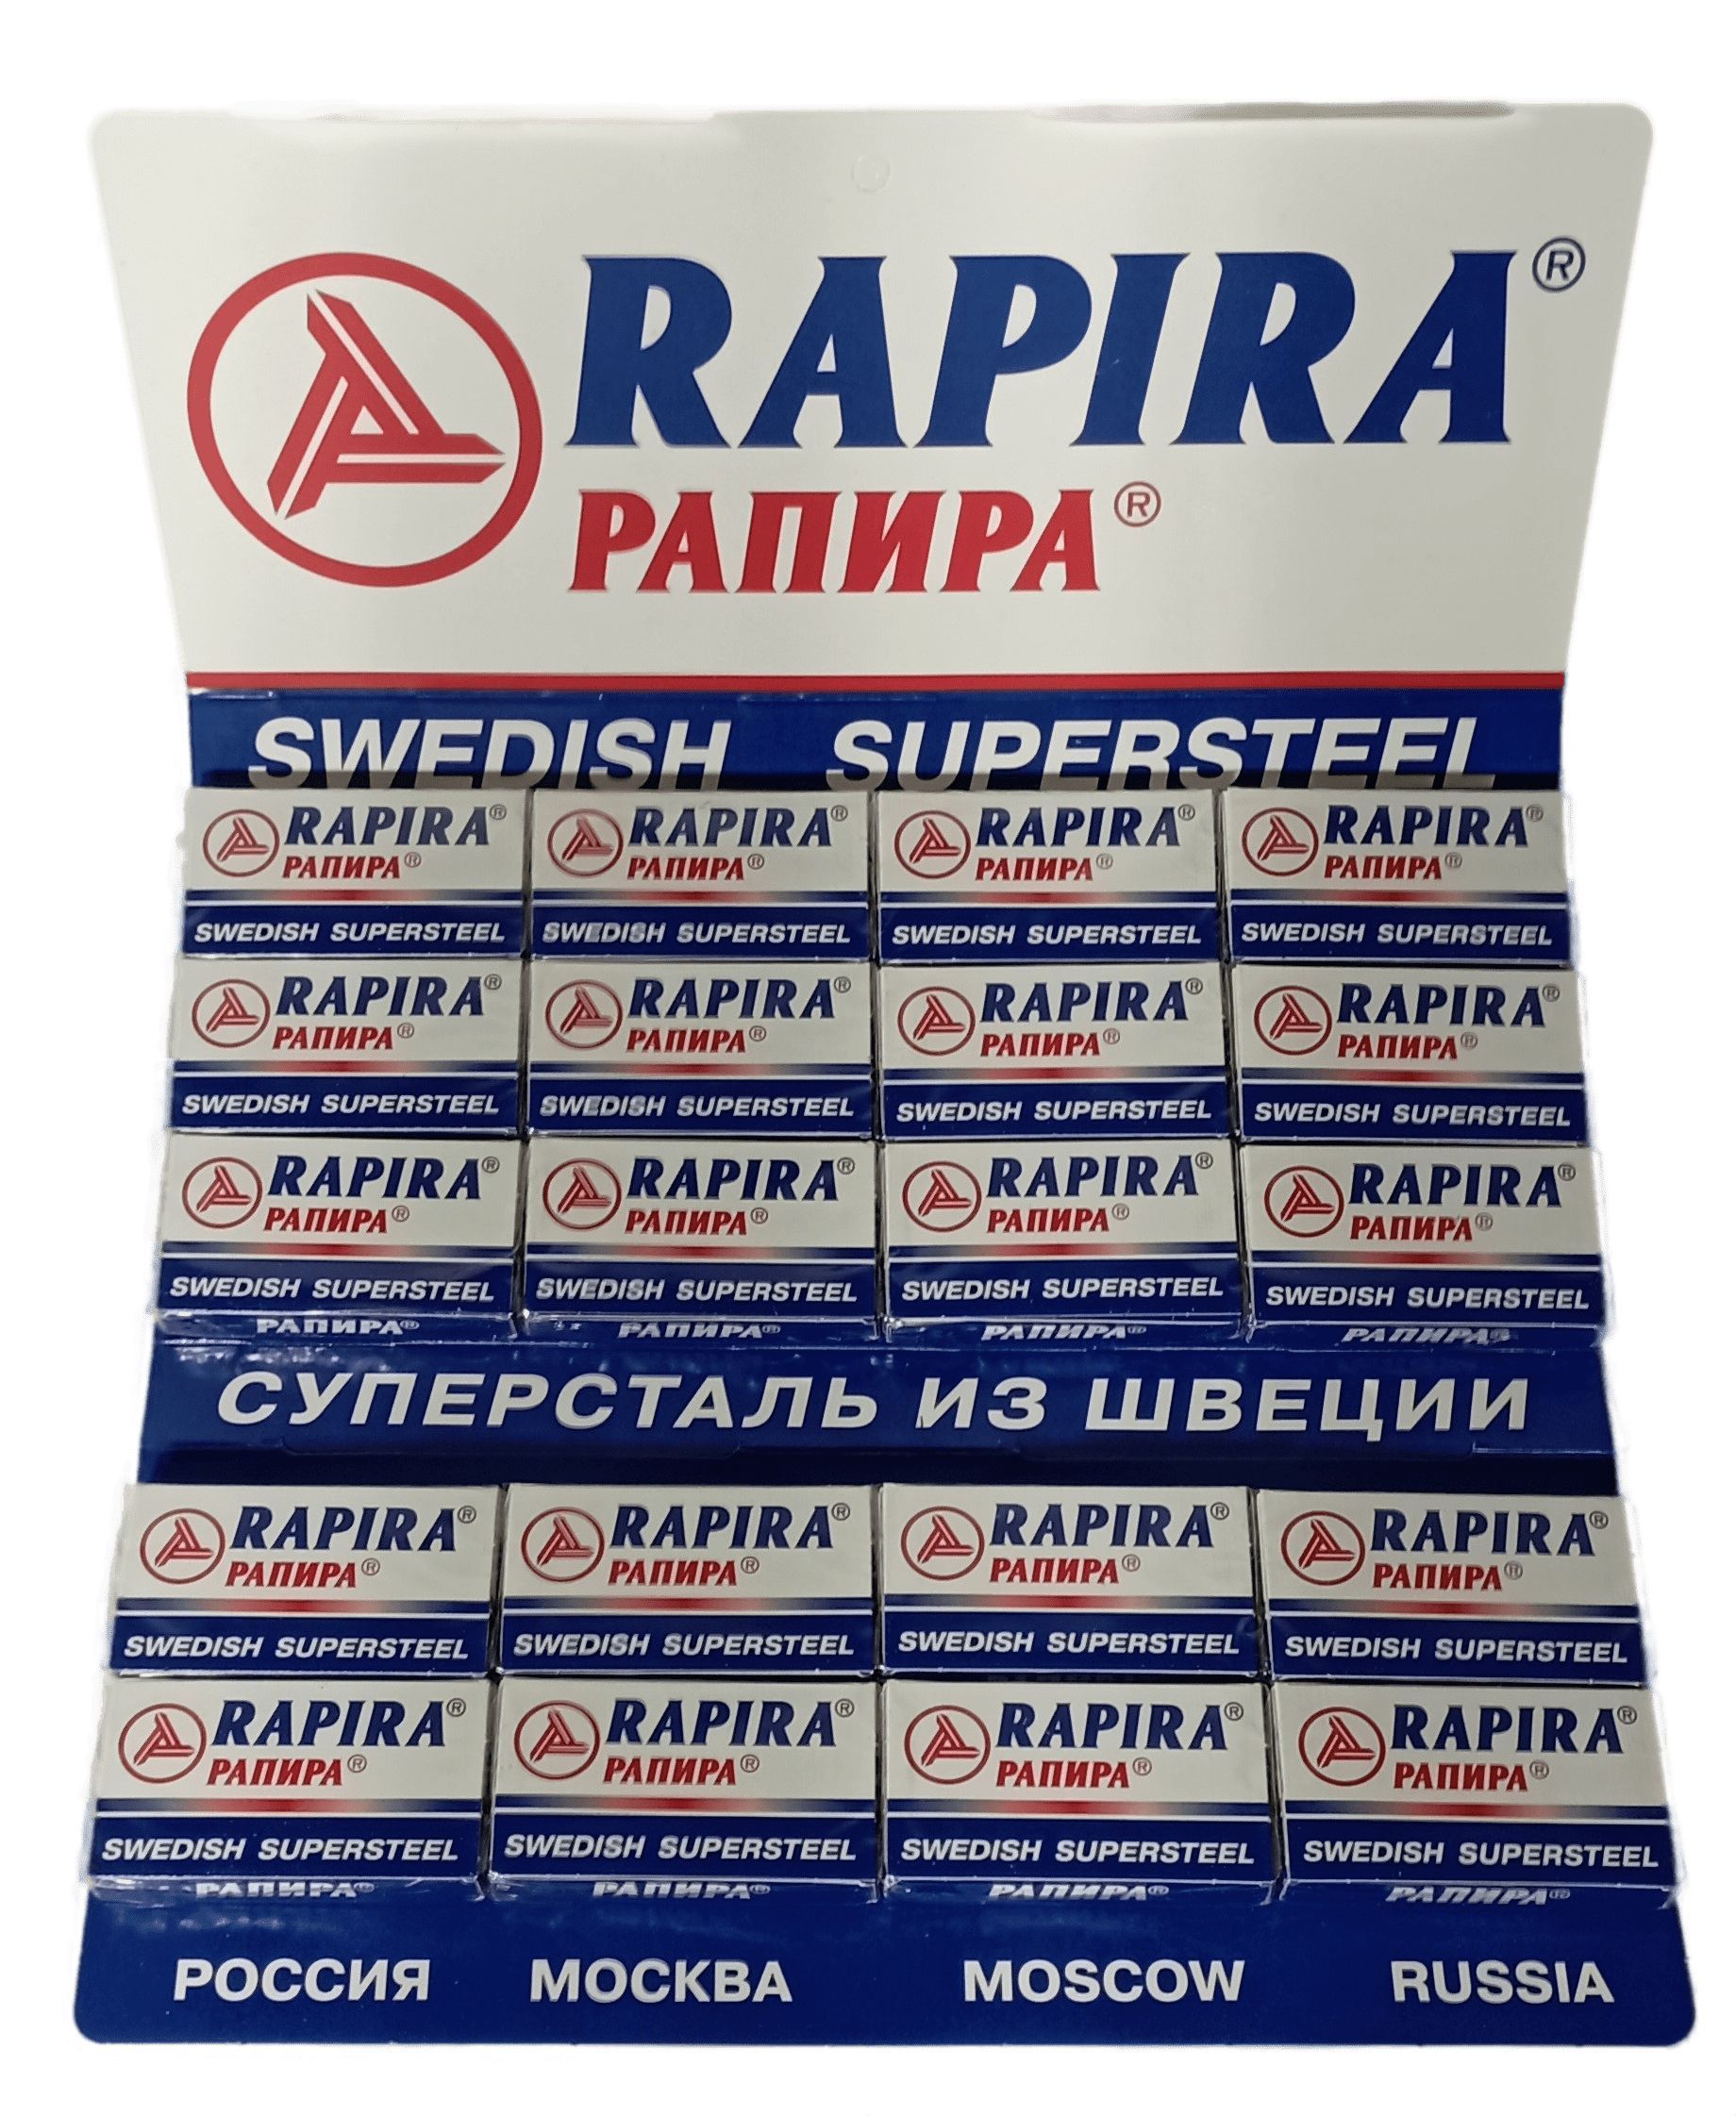 Рапира характеристики. Лезвия Рапира суперсталь. Rapira Swedish supersteel. Рапира суперсталь. Rapira бритва "Swedish supersteel" как открывать.